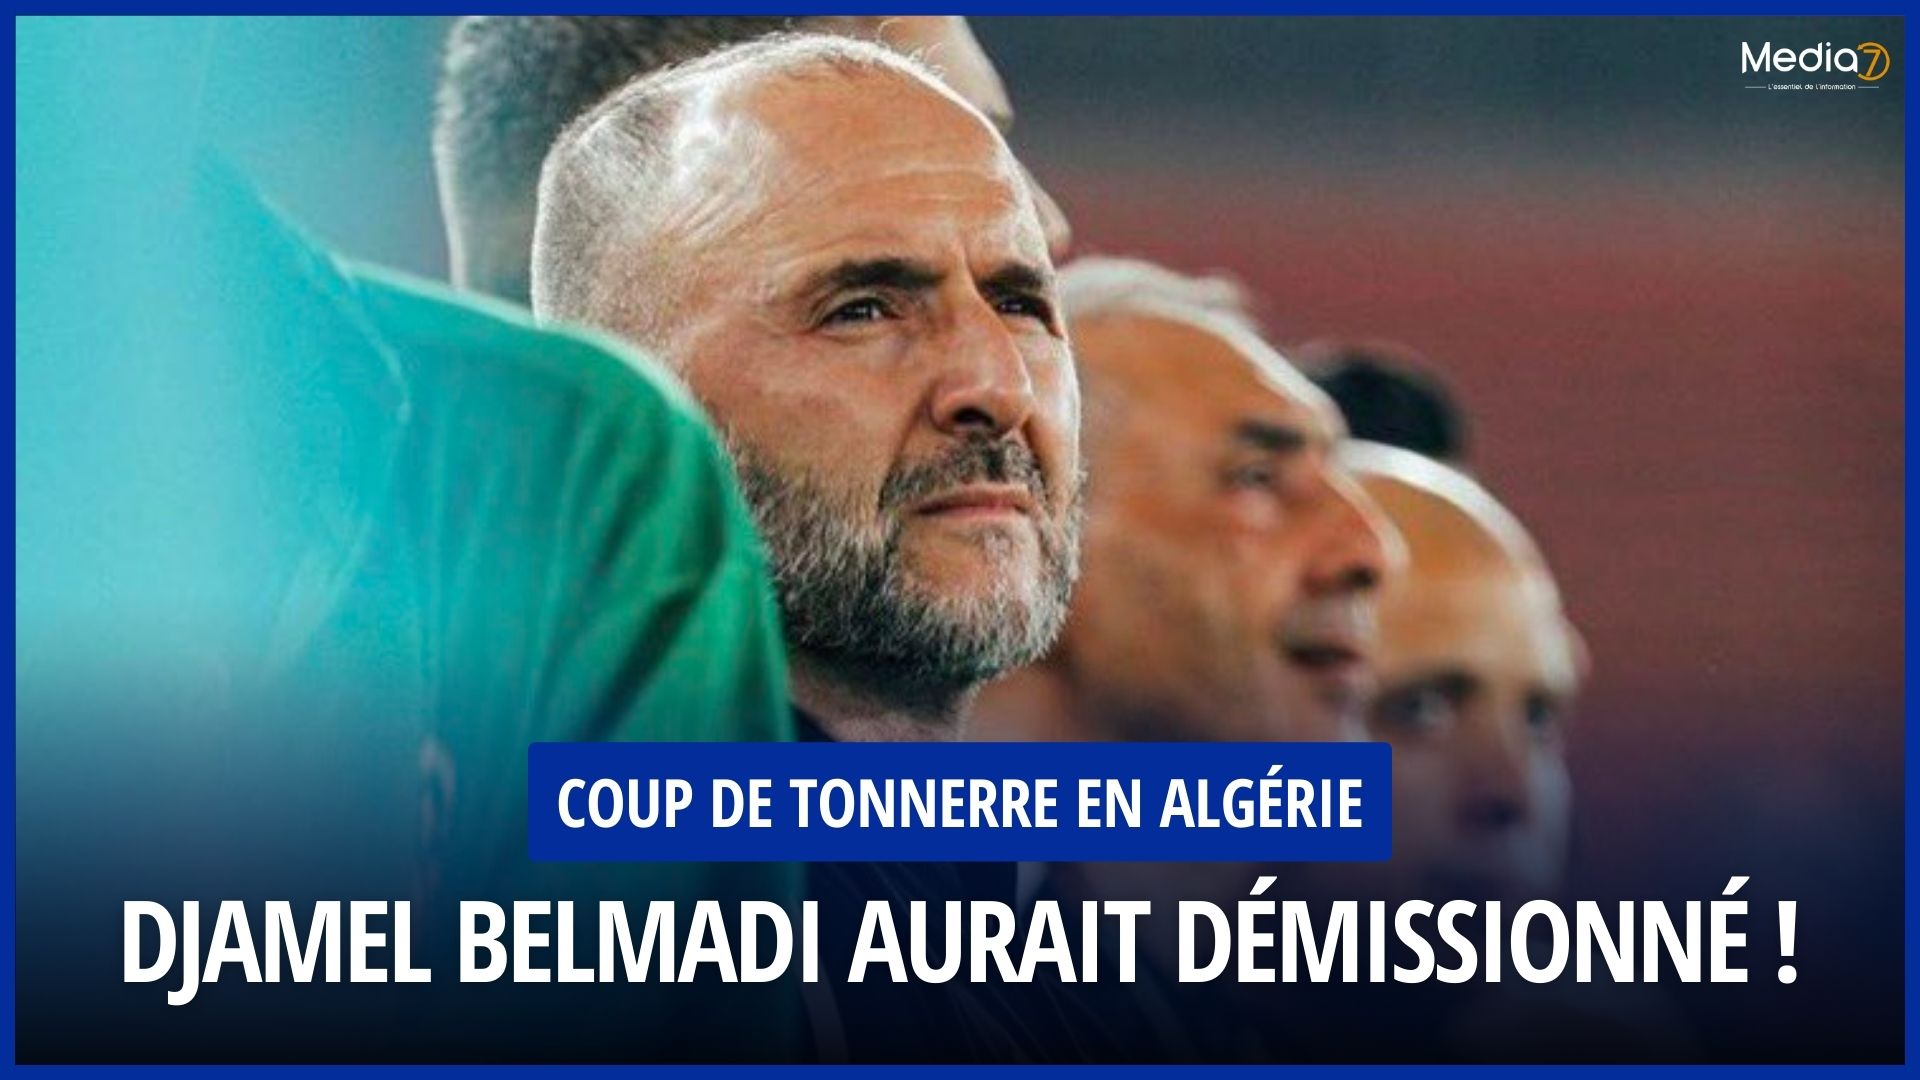 Djamel Belmadi aurait démissionné !